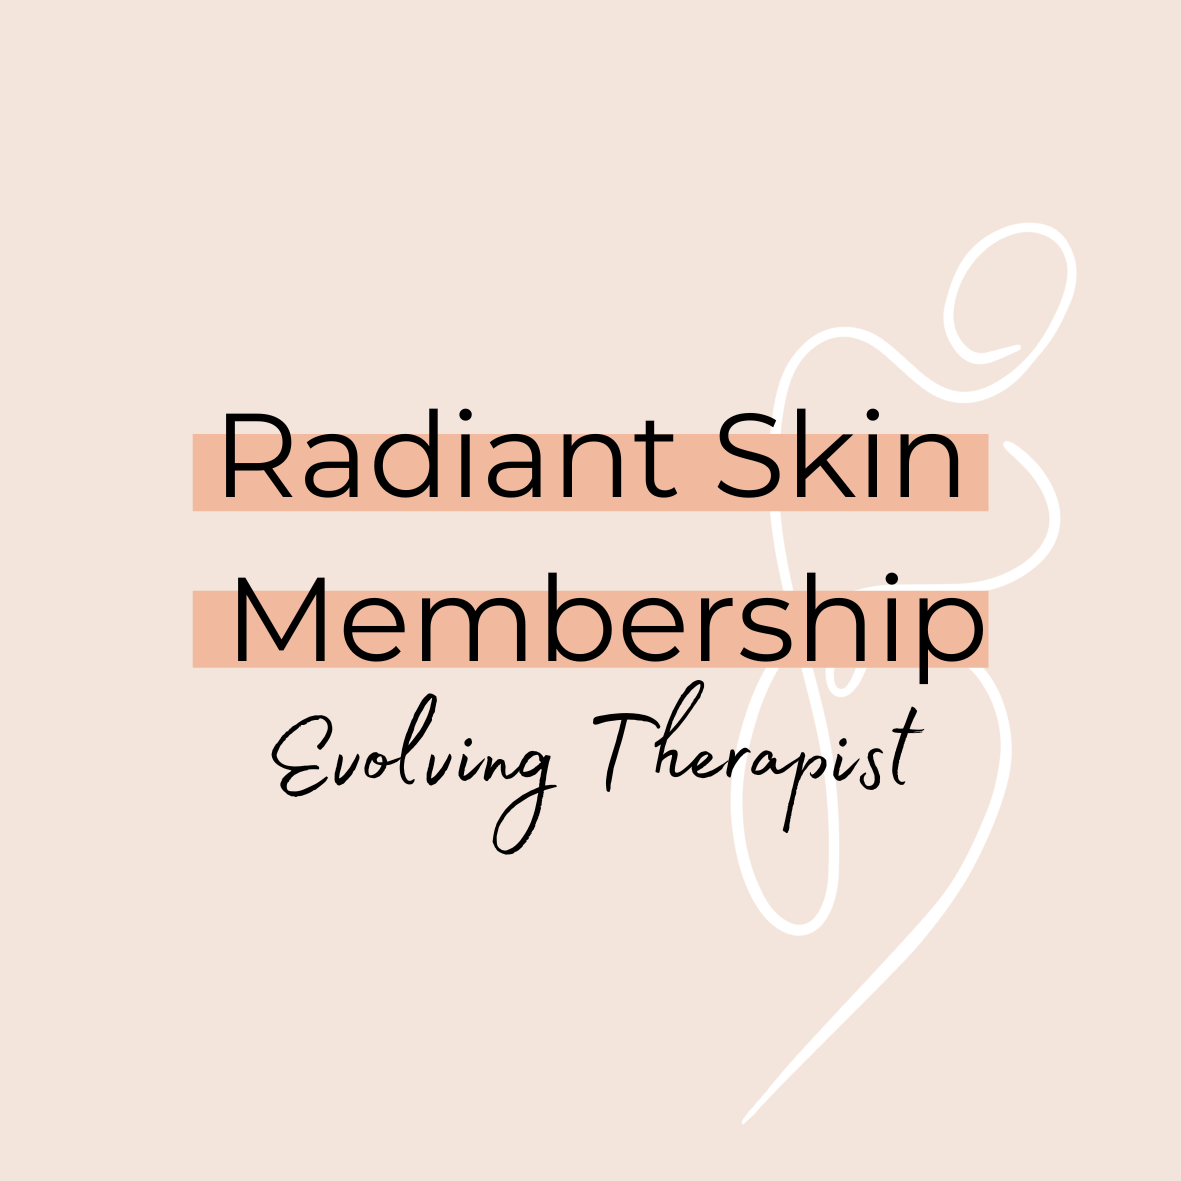 Radiant Skin Membership (Evolving Therapist)